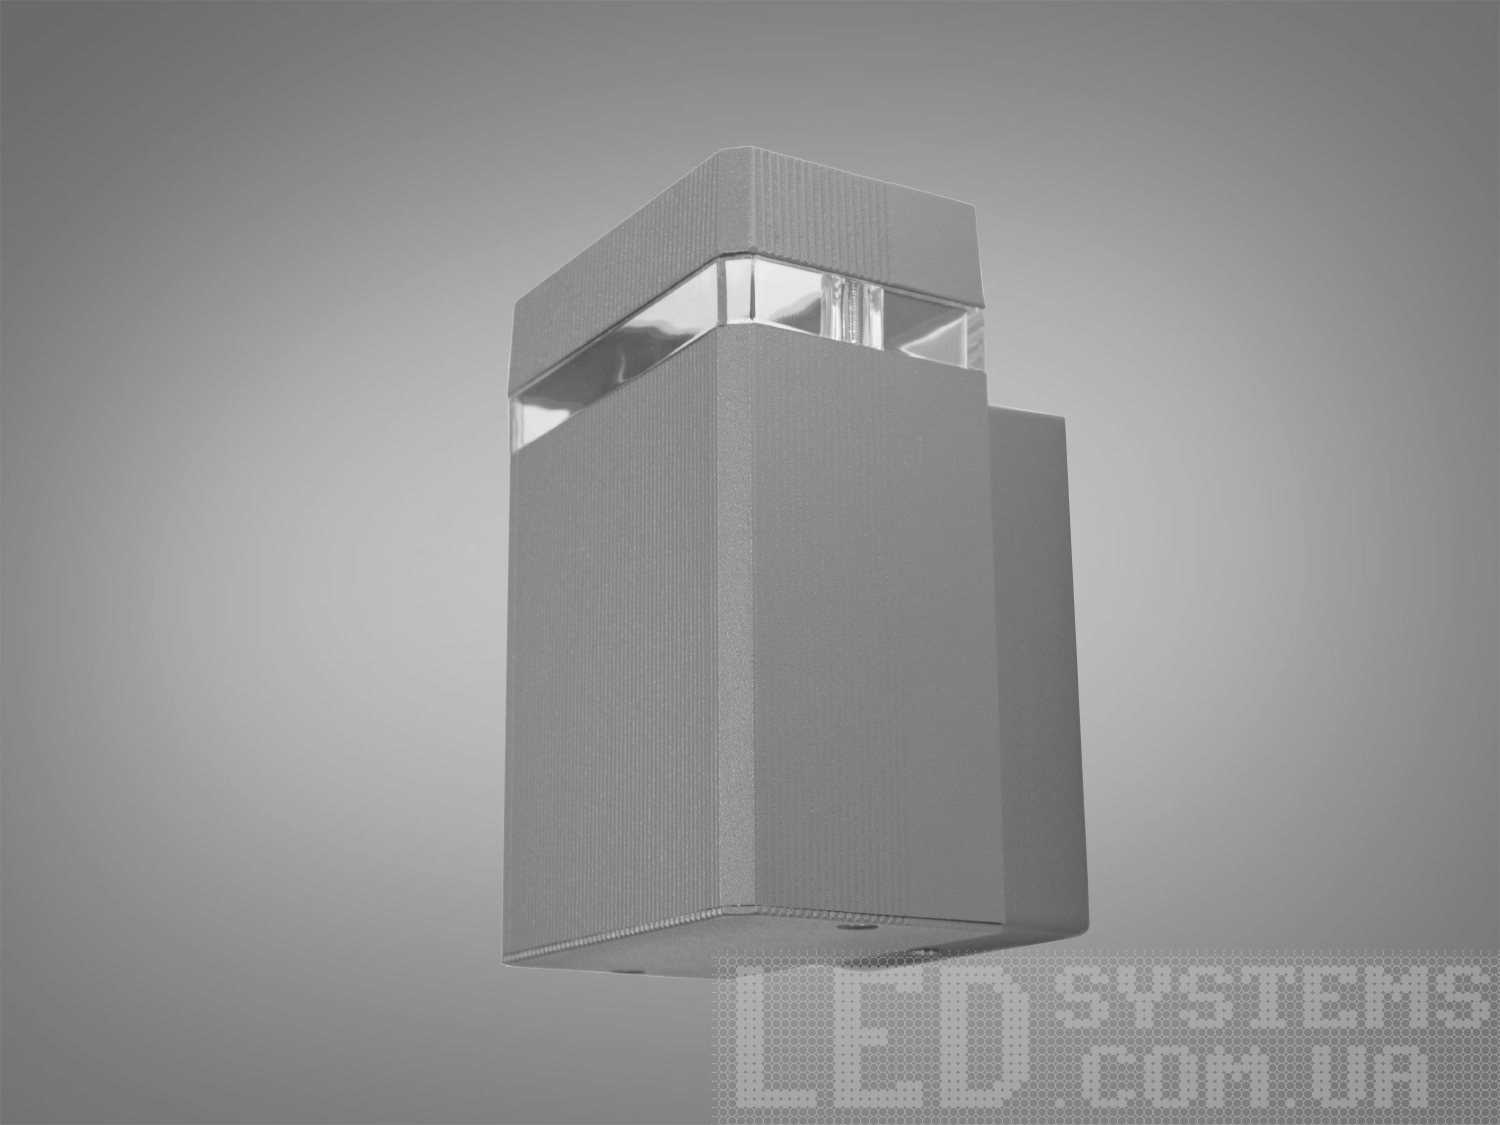 Фасадний світильник для підсвічування стін, парканів, патрон Е 27Фасадные светильники, LED светильники, уличные светильники, Архитектурная подсветка